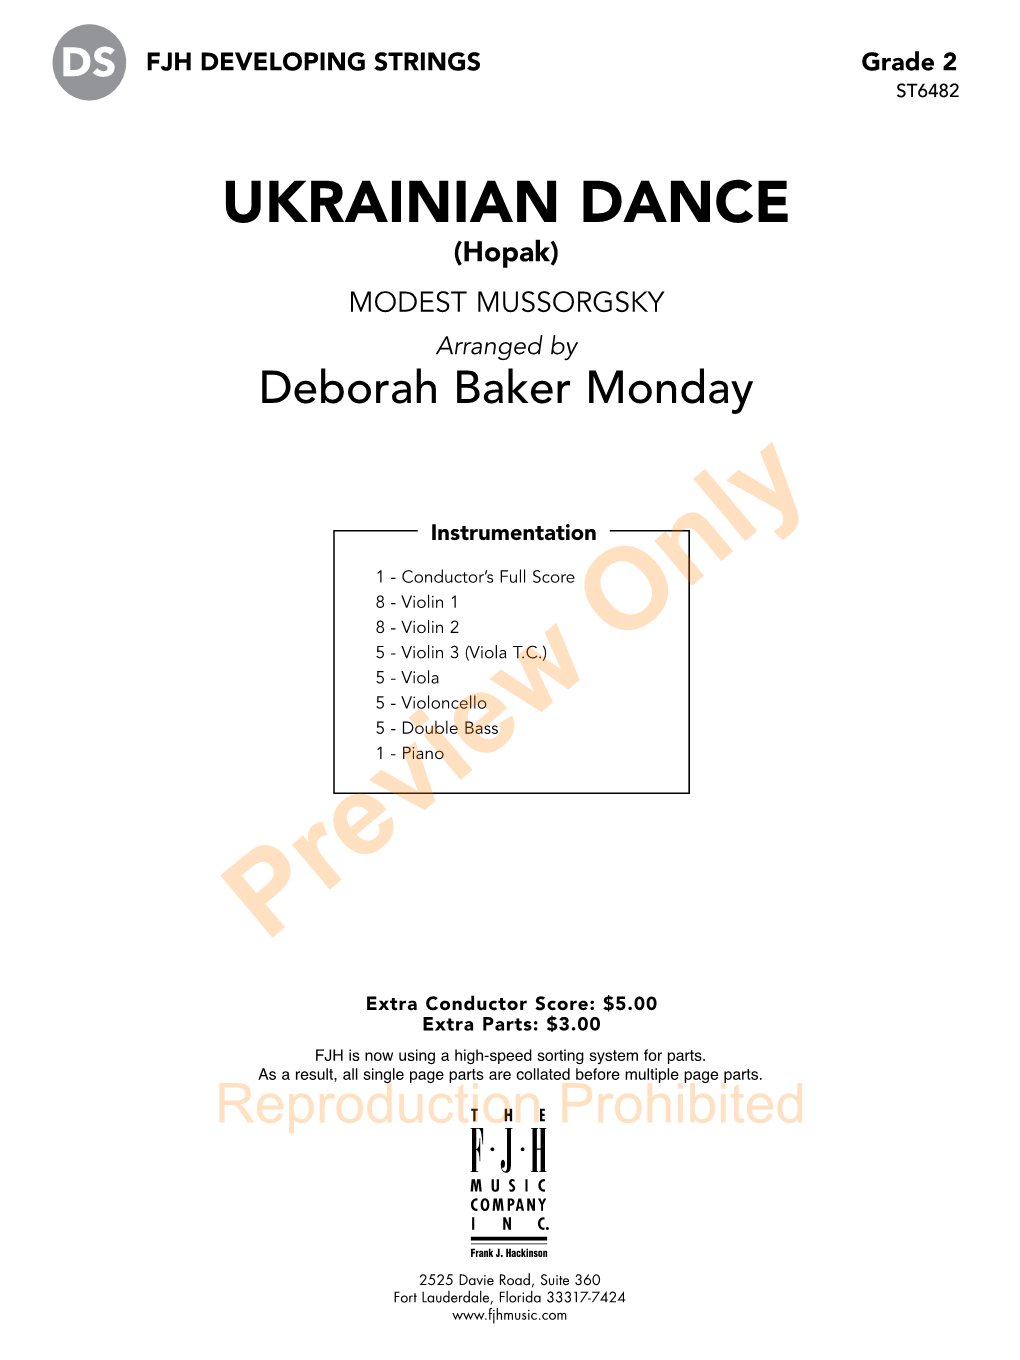 UKRAINIAN DANCE (Hopak) MODEST MUSSORGSKY Arranged by Deborah Baker Monday